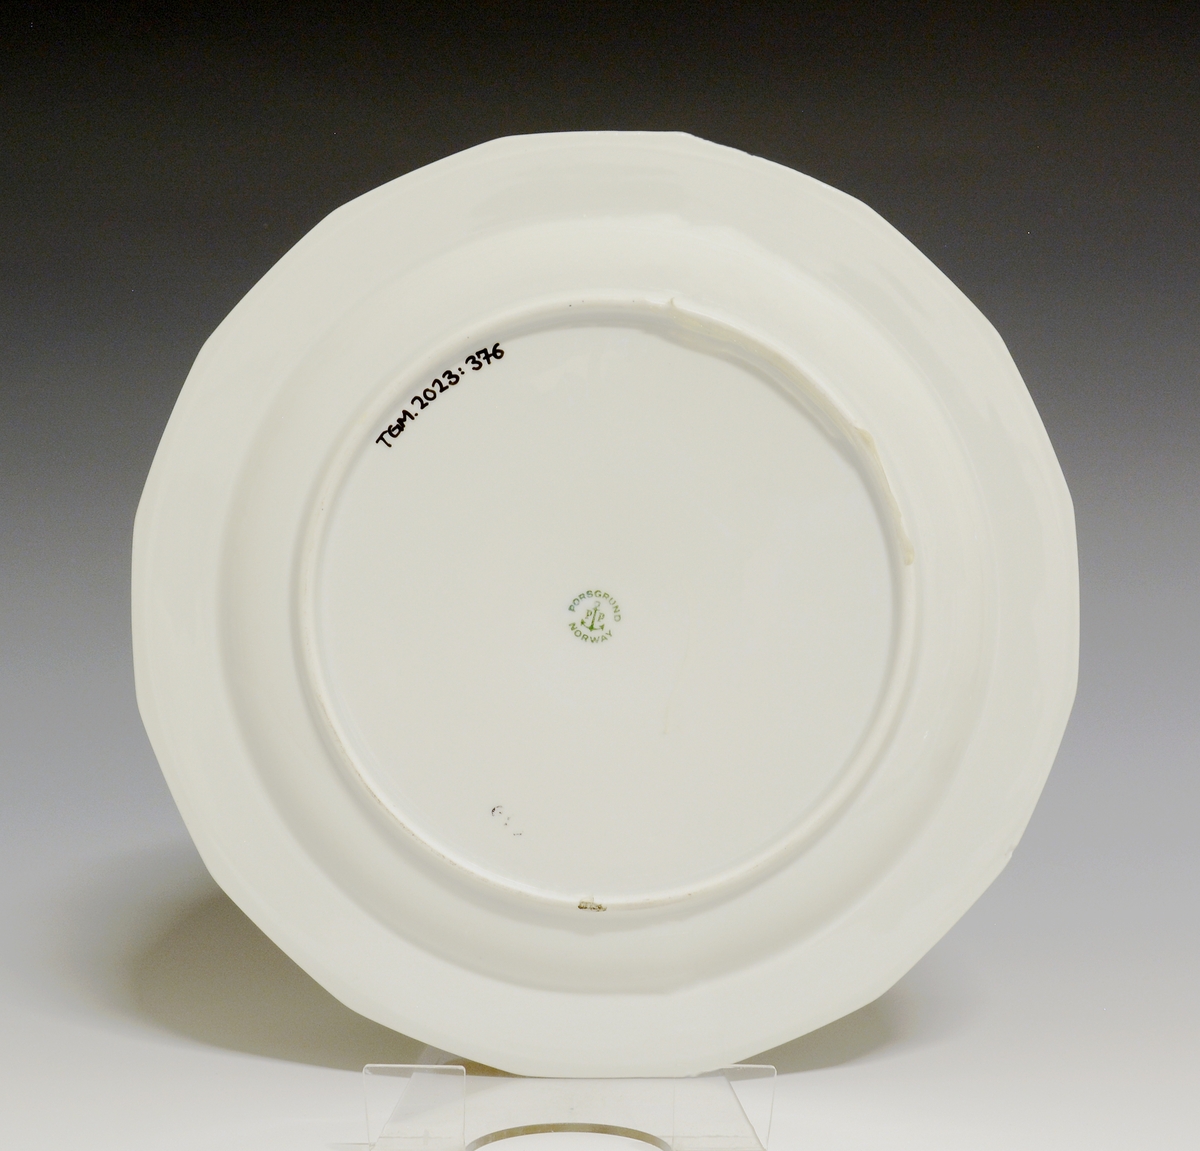 Mangekantet tallerken av porselen med hvit glasur. 
Modell: Octavia, tegnet av Grete Rønning i 1977.